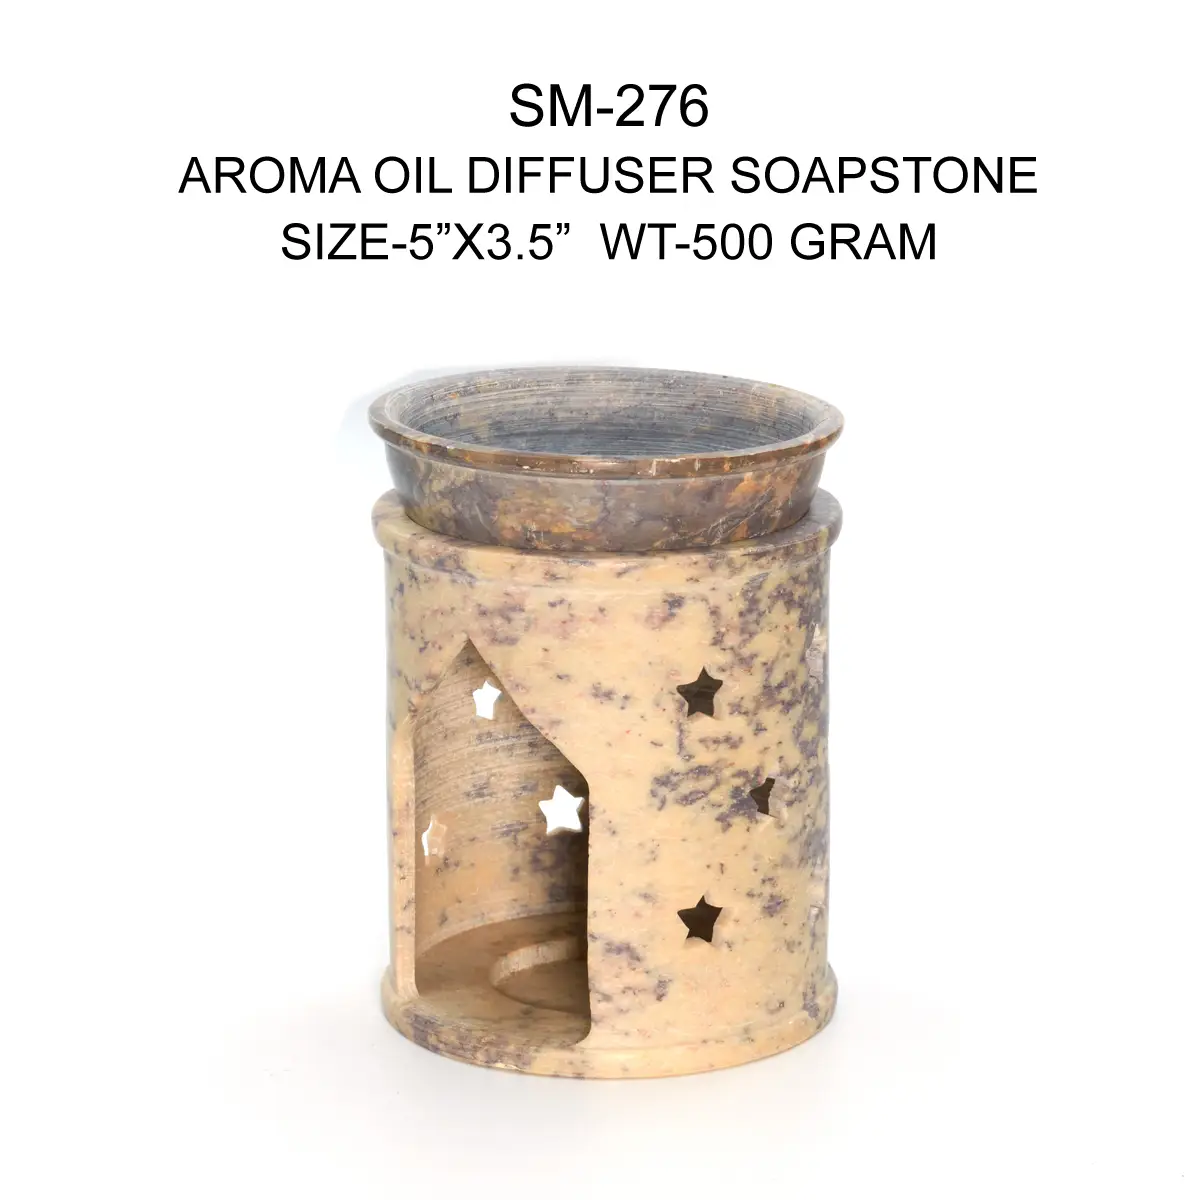 AROMA OIL DIFFUSER SOAPSTONE